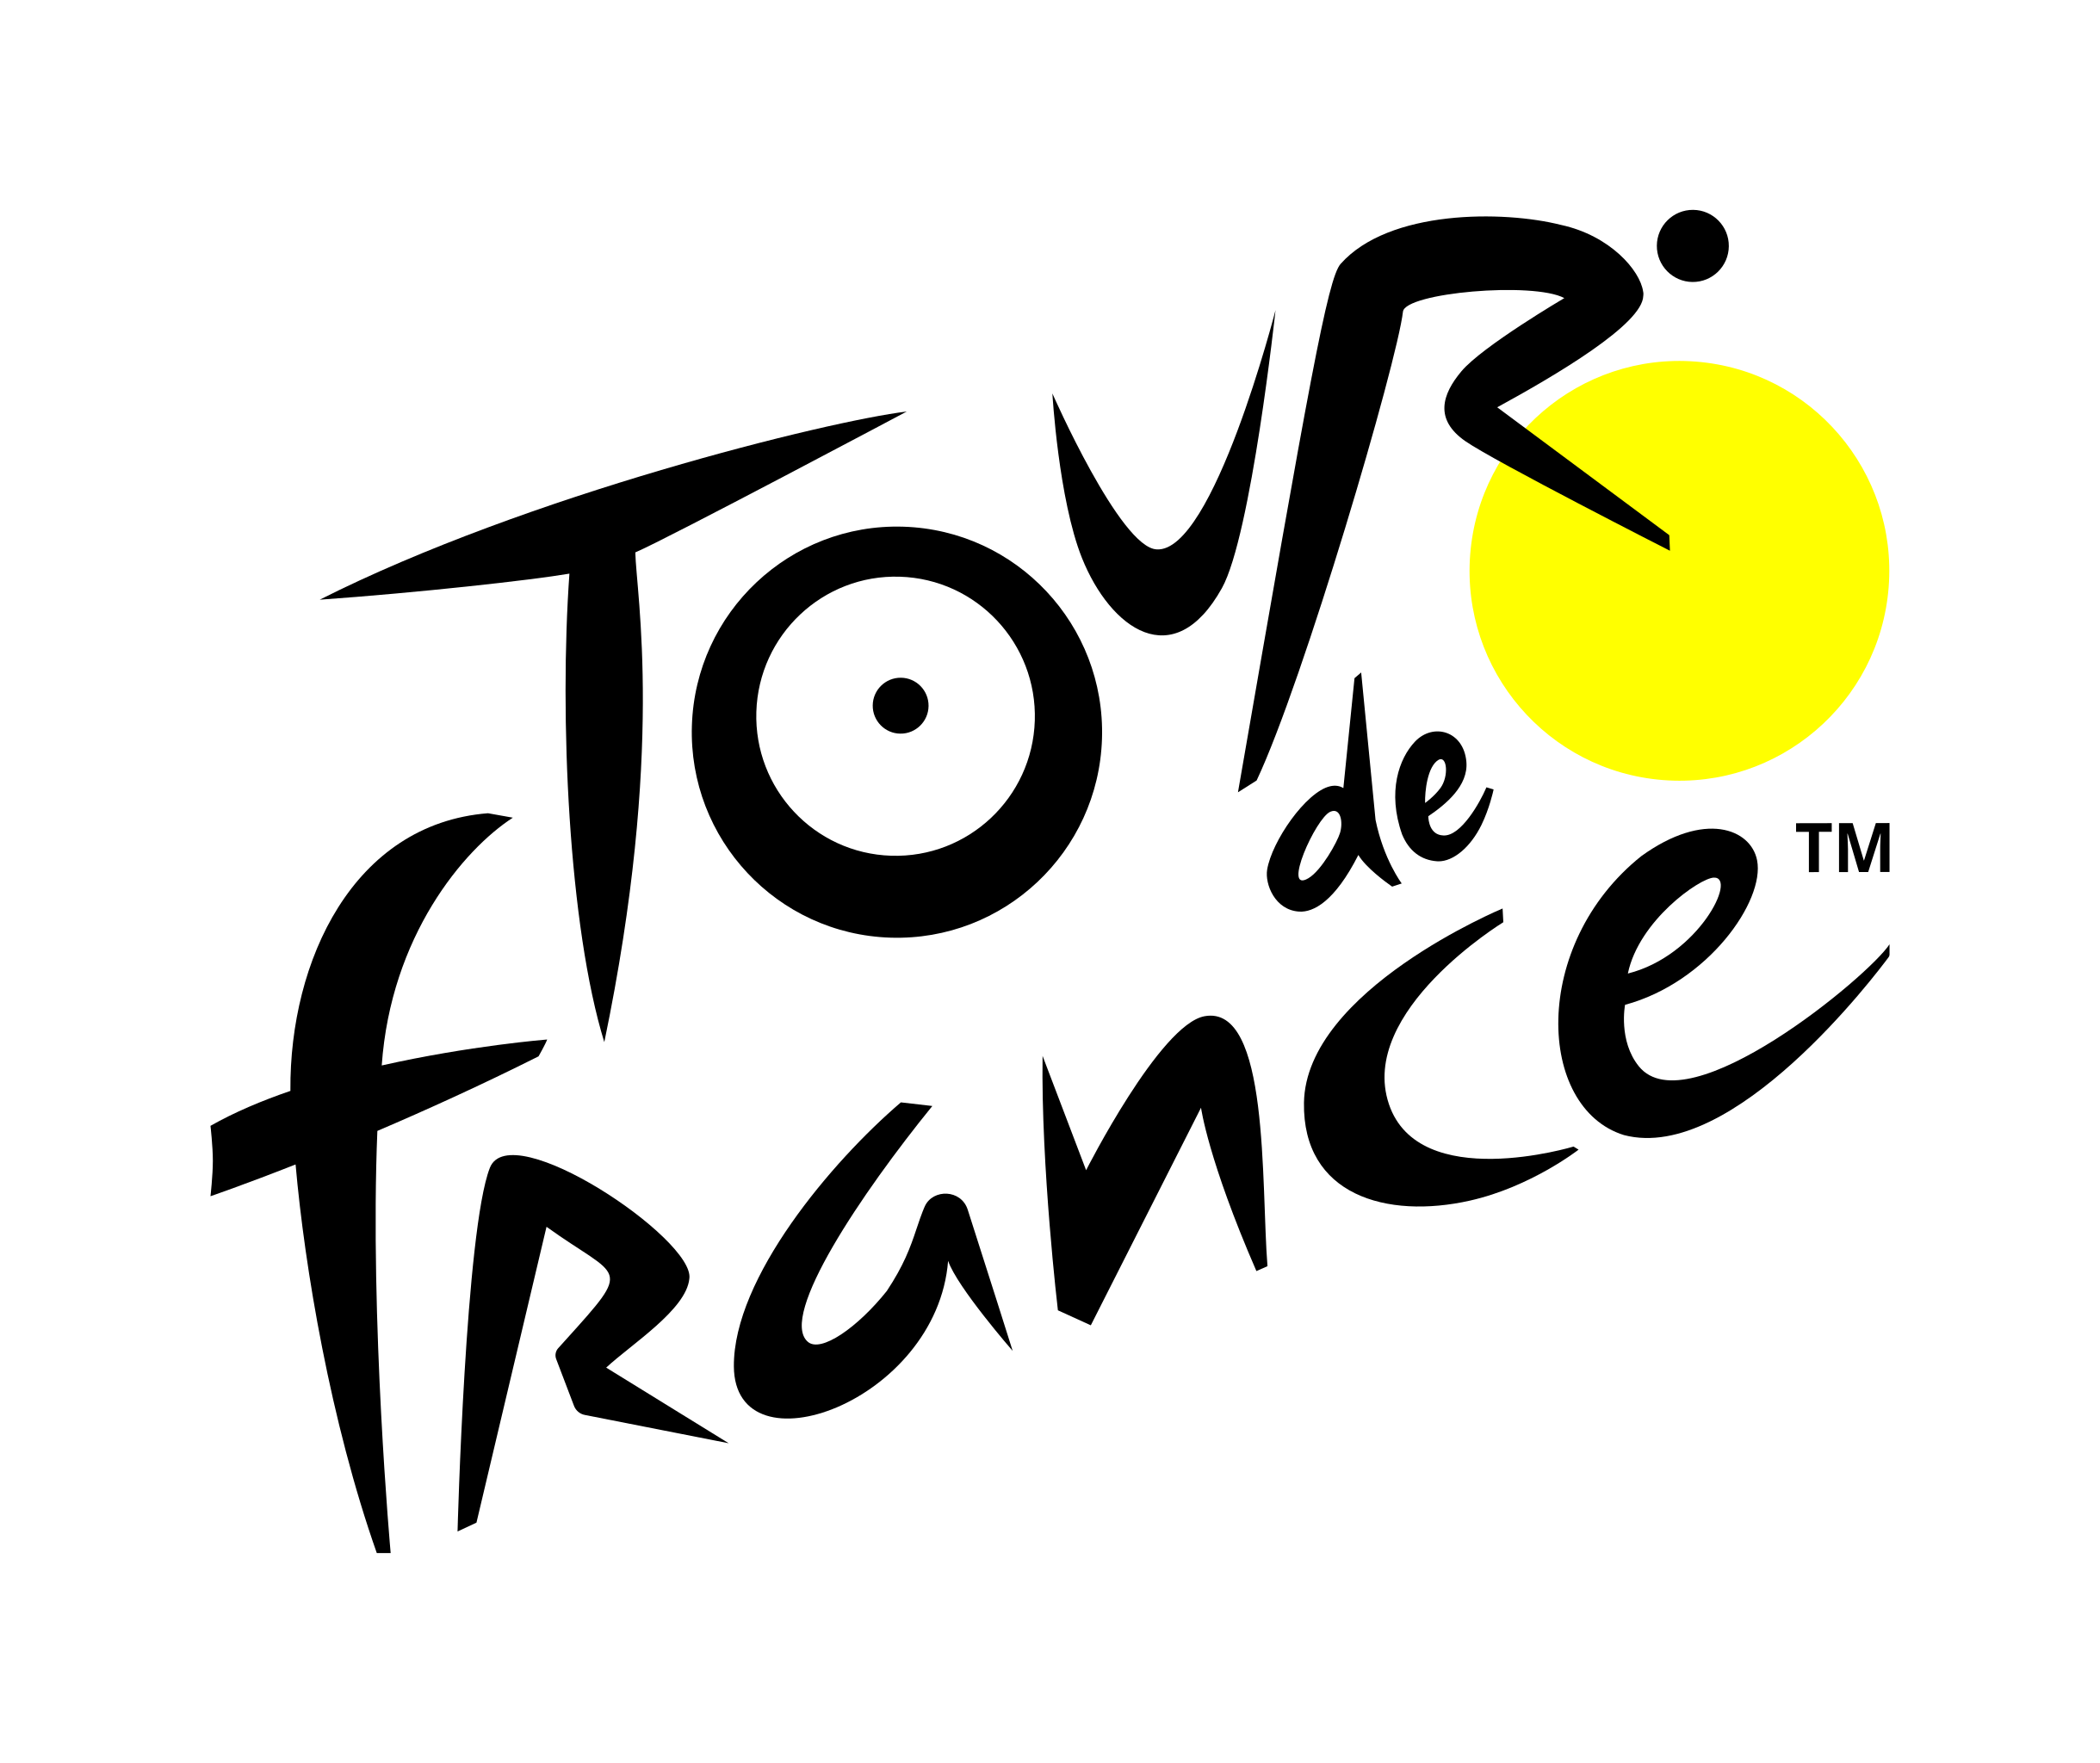 Tour de France logo.svg